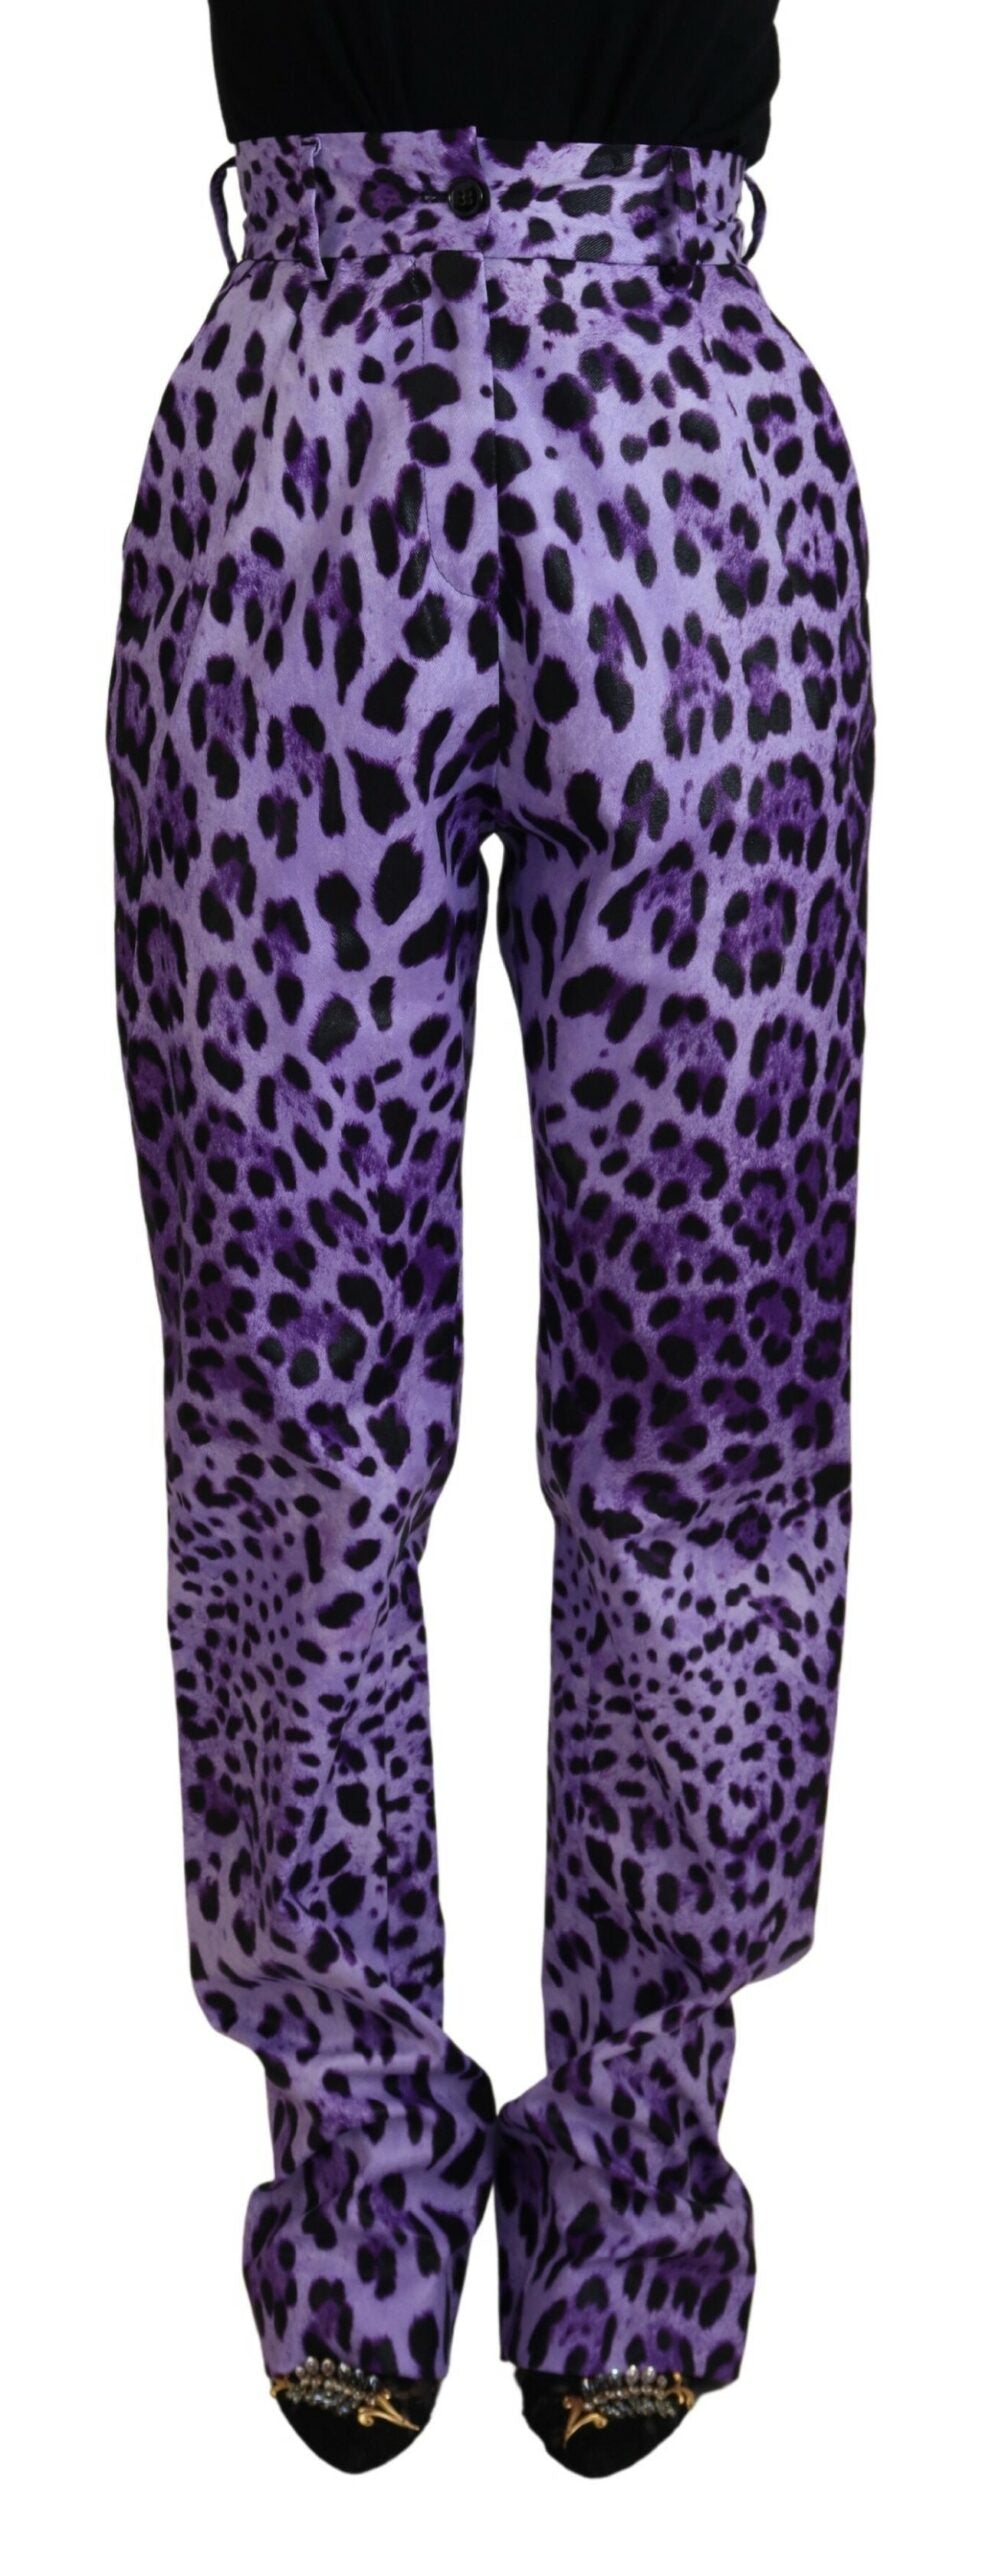 Elegant High Waist Straight Purple Pants